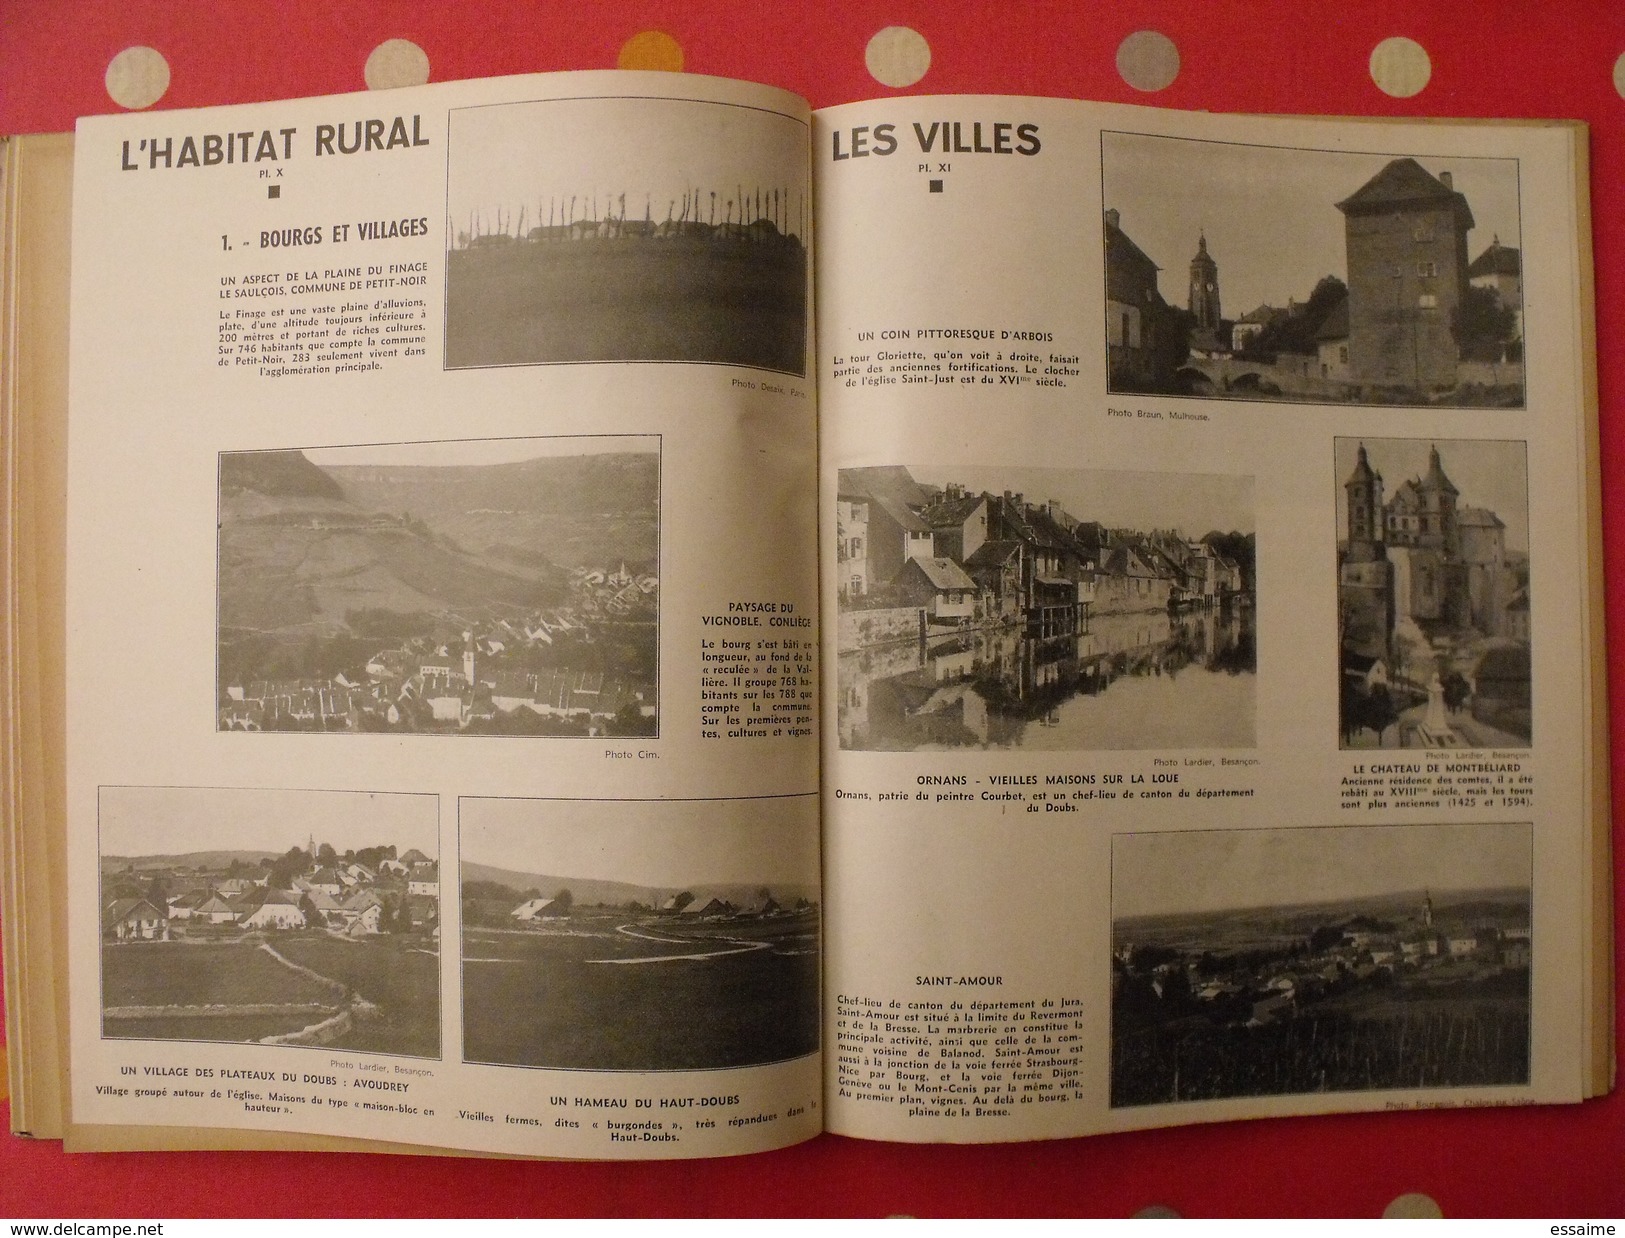 petite géographie du Doubs et du Jura. L. Martin. 1944